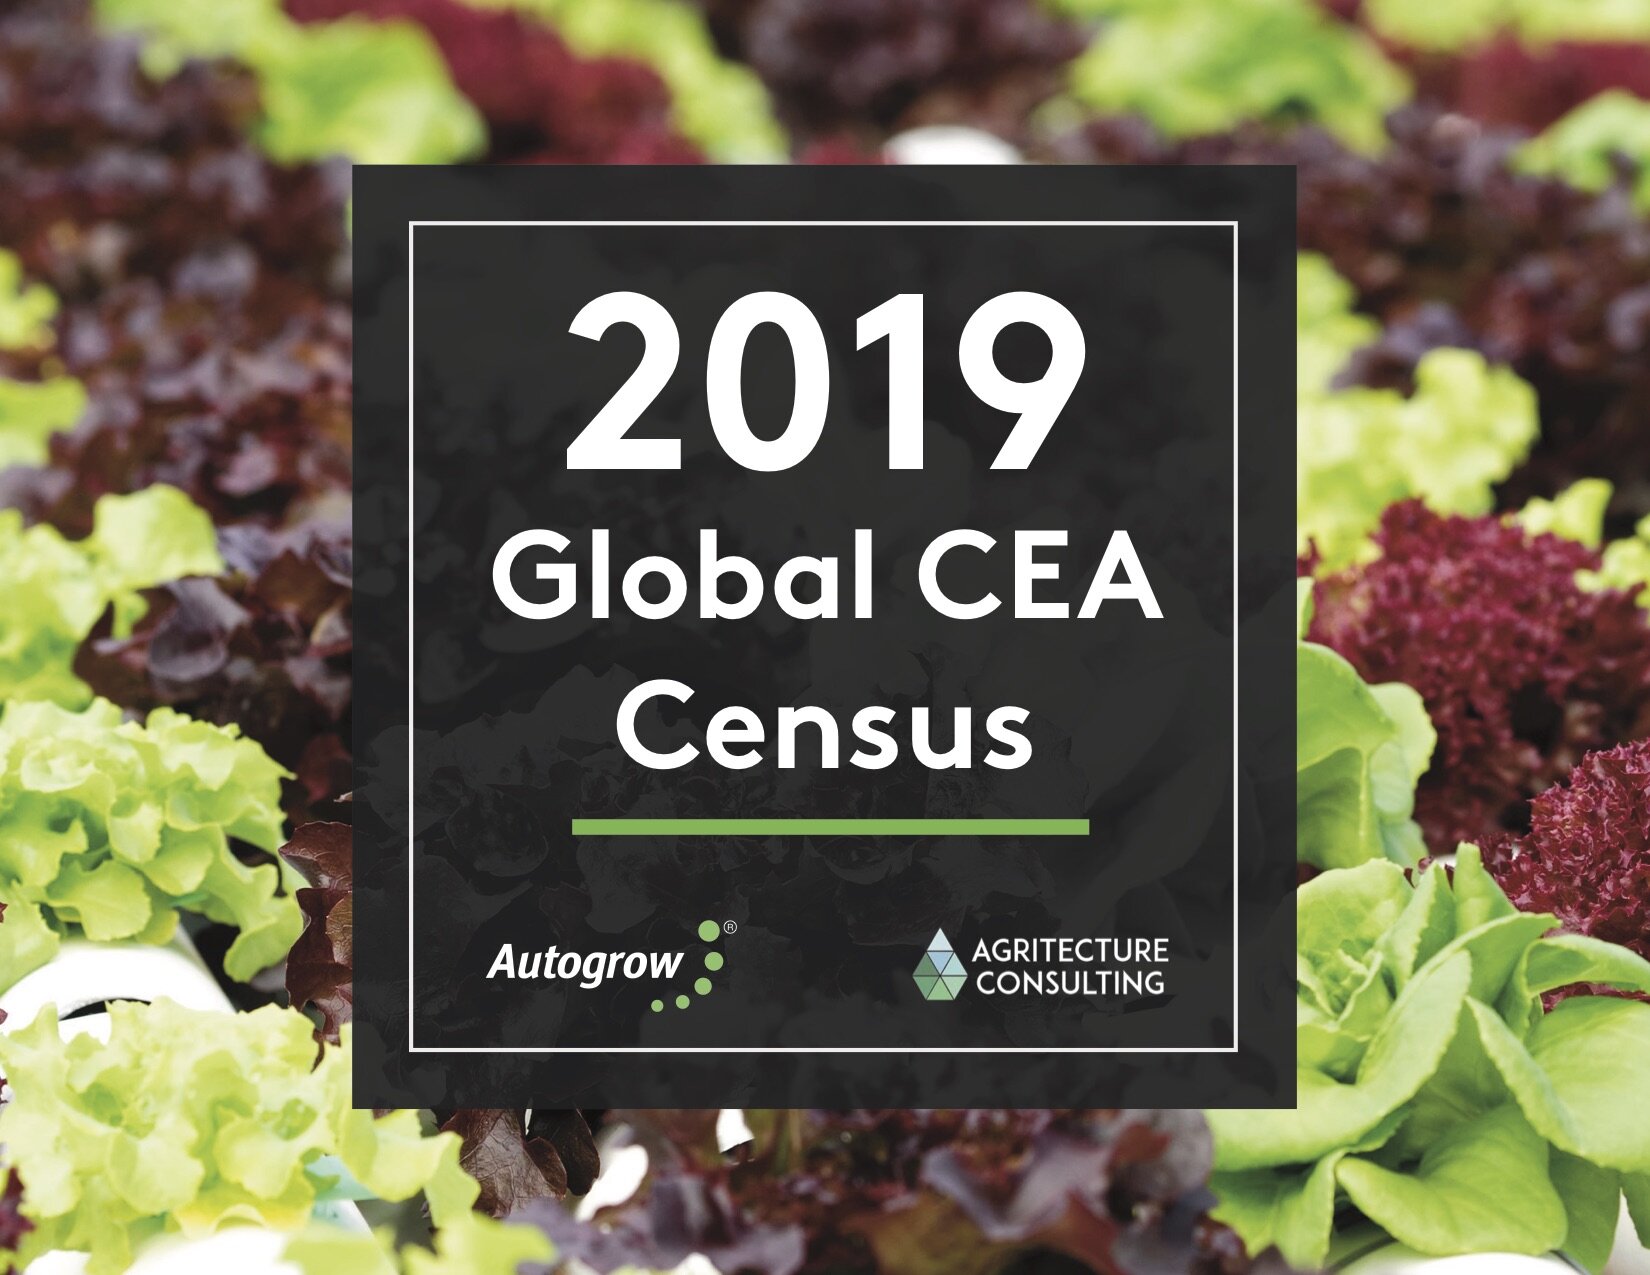 Global CEA Census 2019